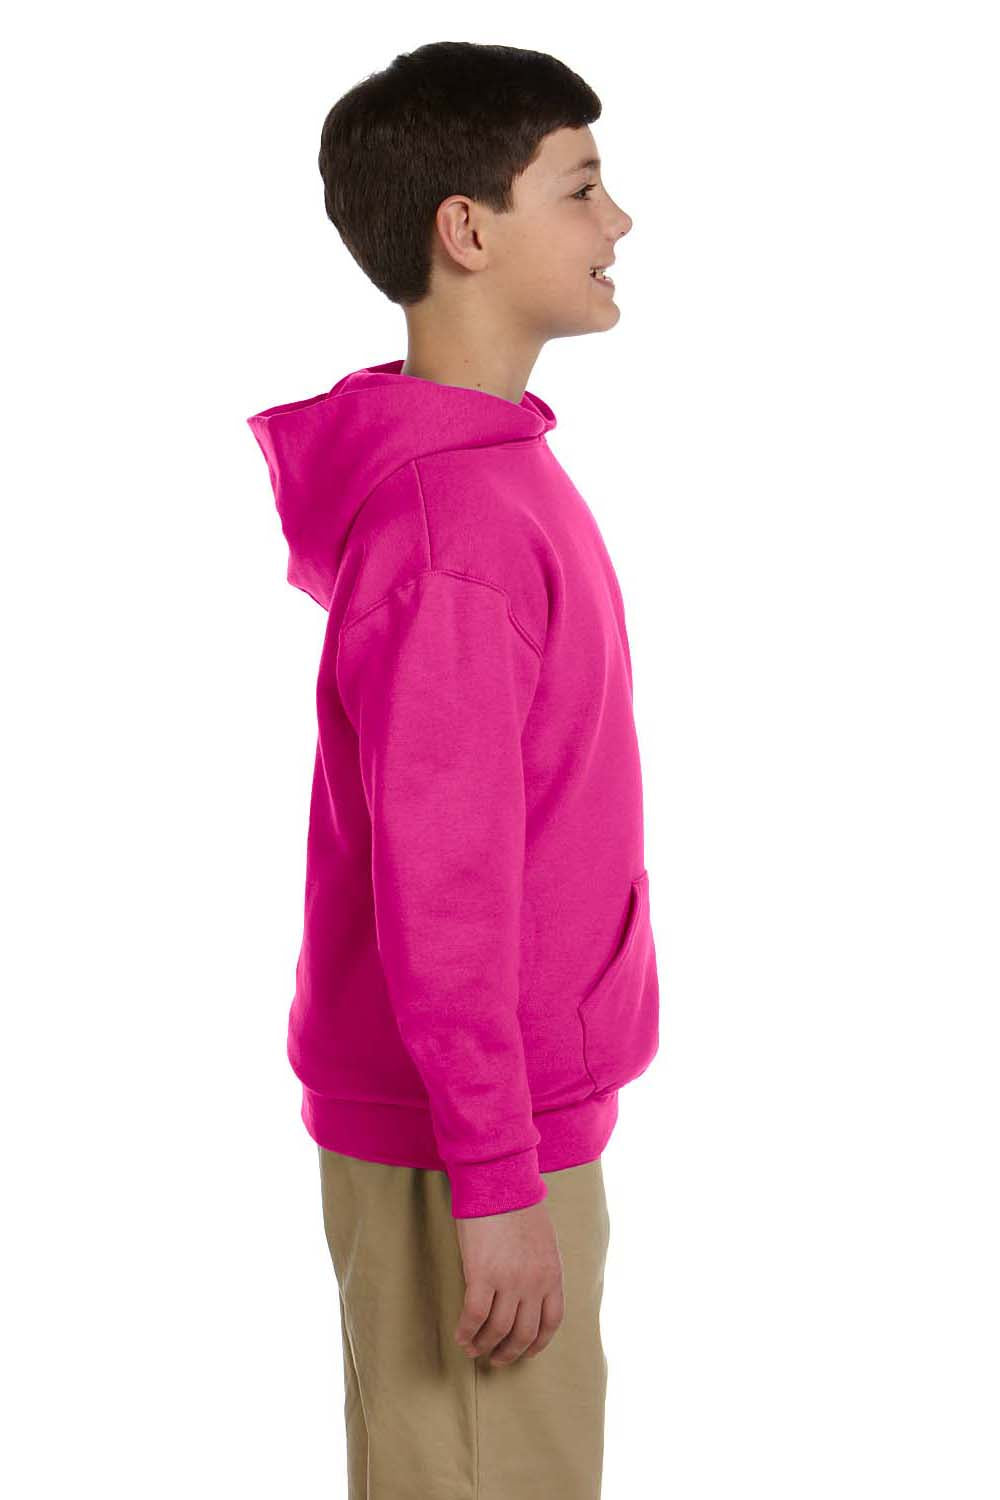 Jerzees 996Y Youth NuBlend Fleece Hooded Sweatshirt Hoodie Cyber Pink Side